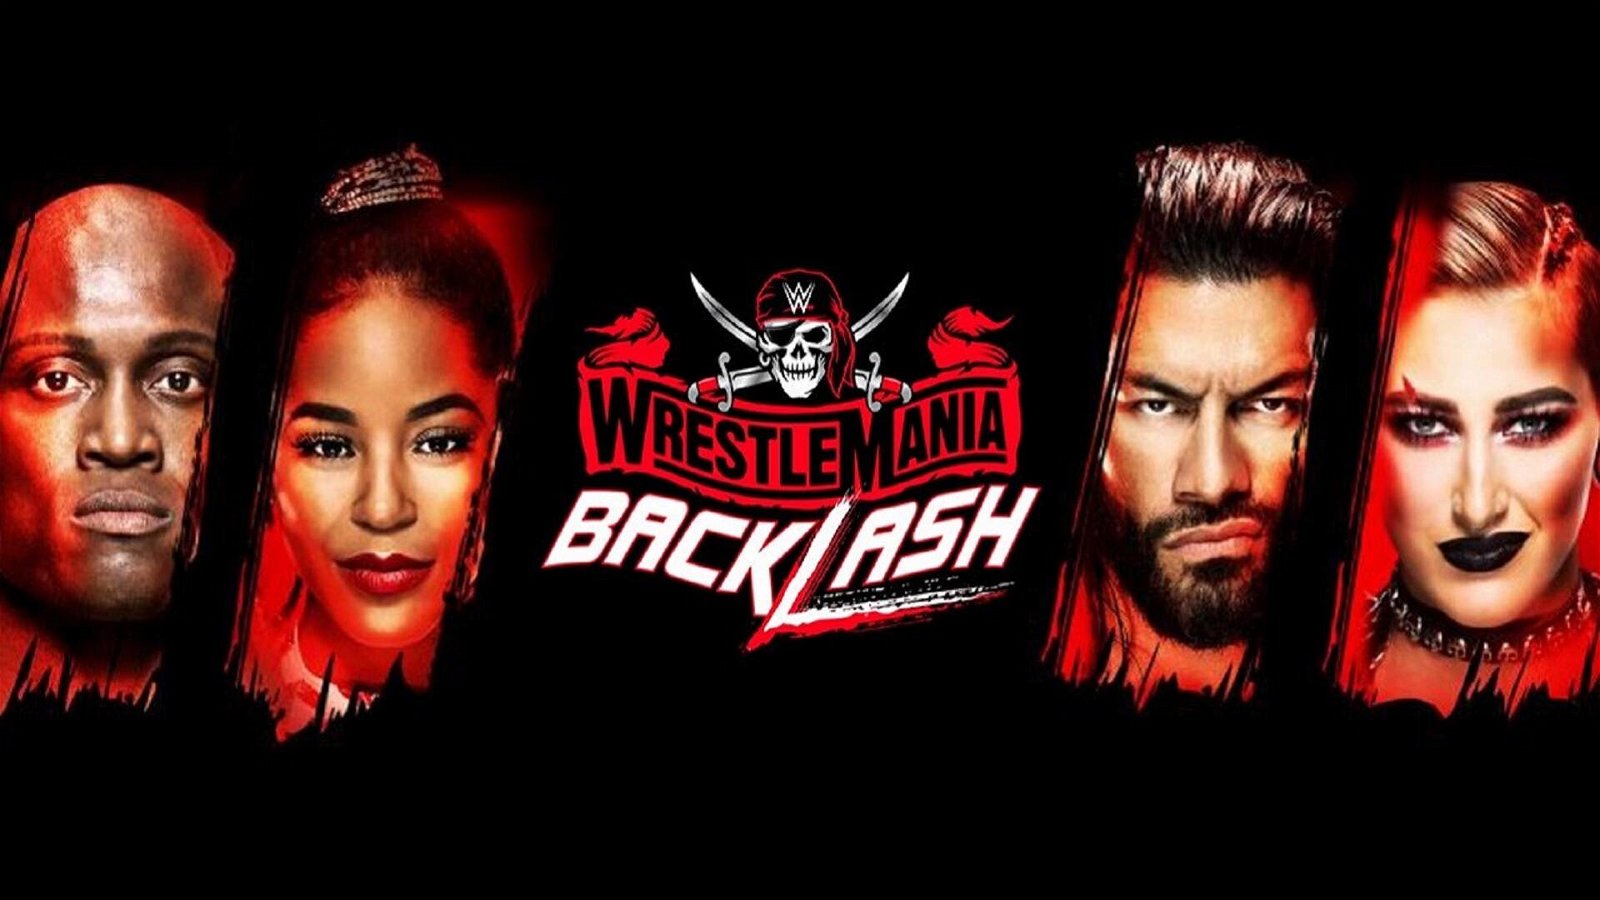 Immagine di WrestleMania Backlash 2021: la card del PPV